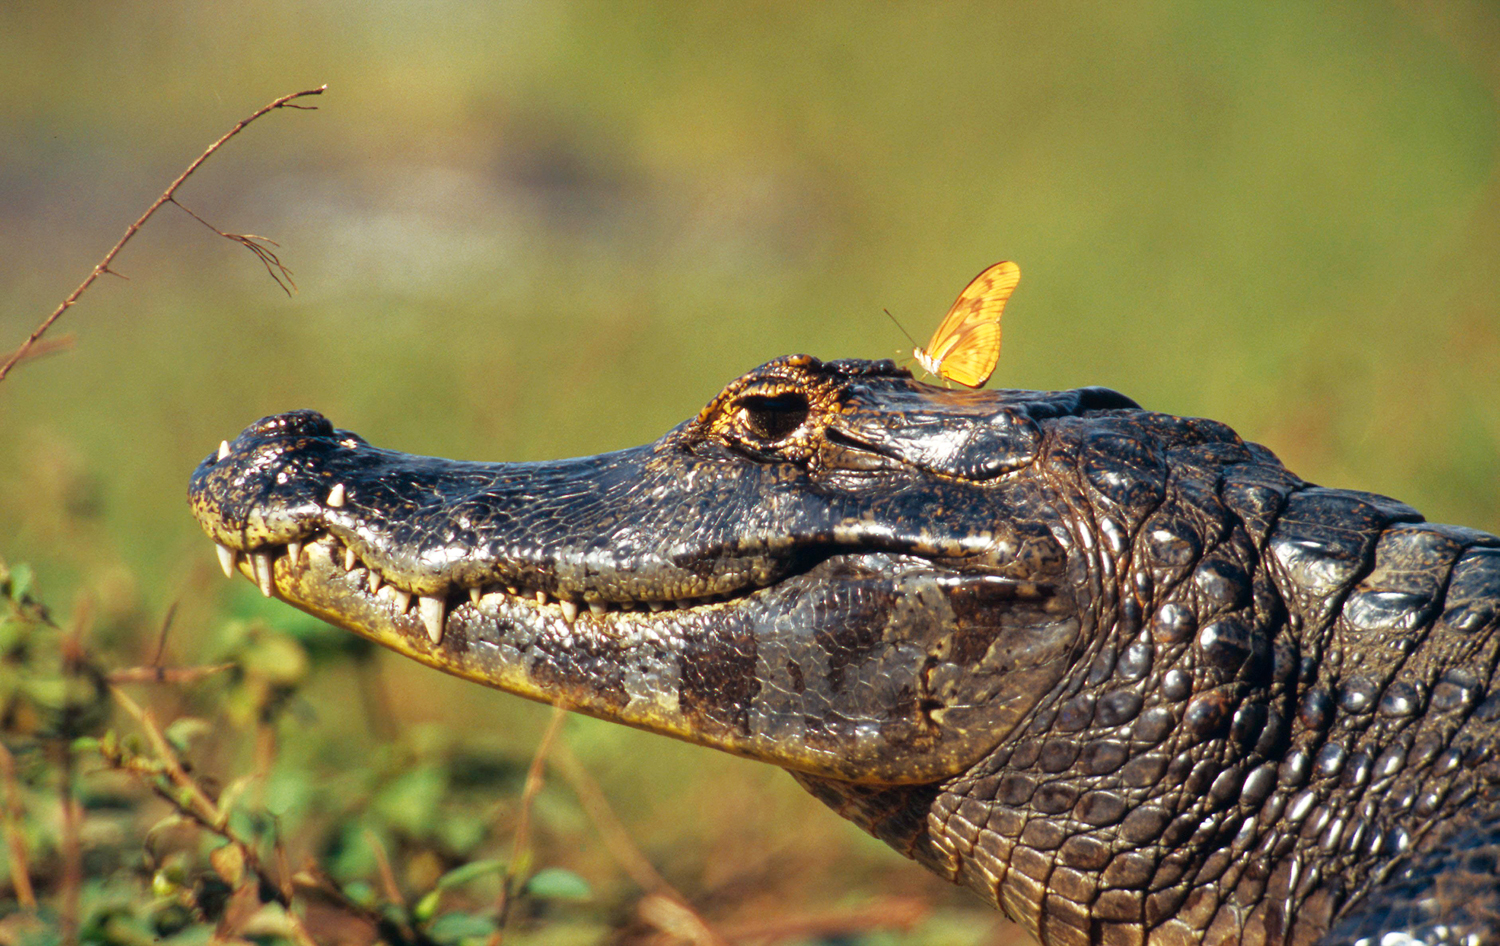 Borboleta-fogo-no-ar (Dryas iulia) pousa sobre a cabeça de um jacaré (<em>Caiman yacare</em>) no Pantanal, Mato Grosso